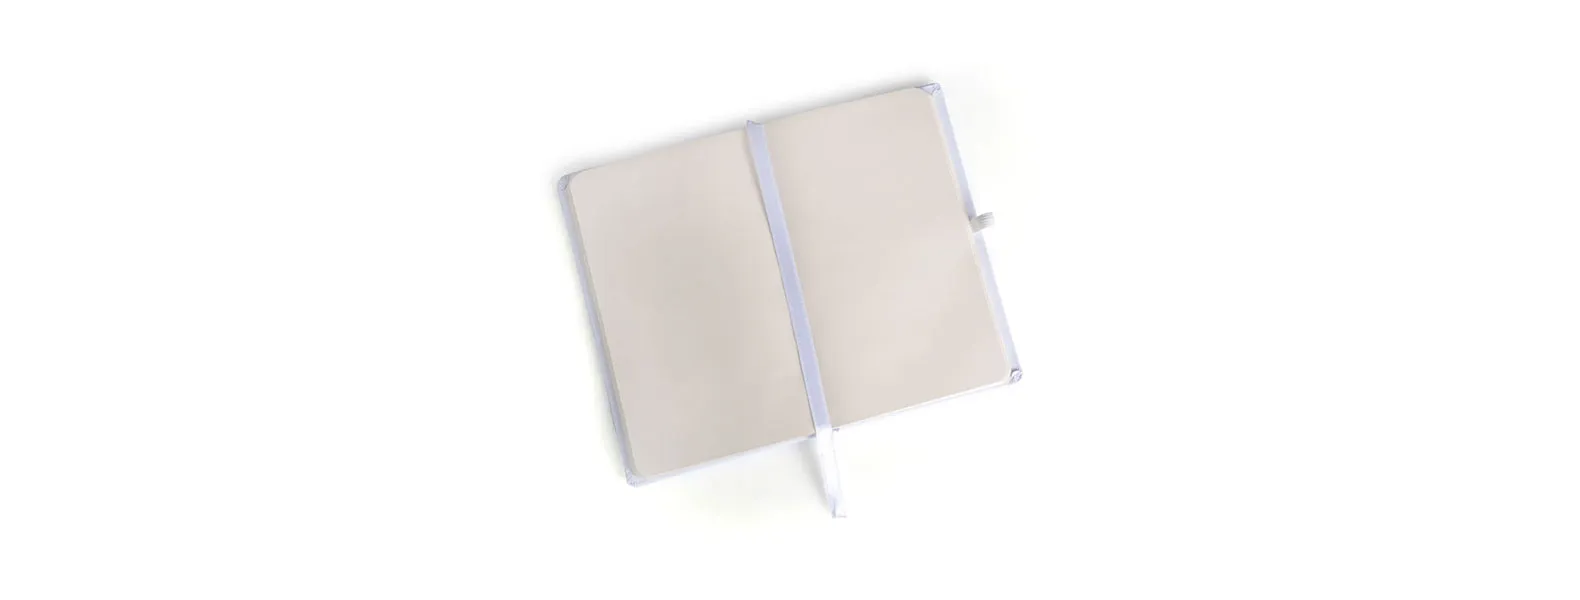 Caderno para anotações branco com capa dura. Conta com 80 folhas não pautadas, marcador de página, porta caneta e elástico para fechamento. Gramatura da folha de 70 g/m2.